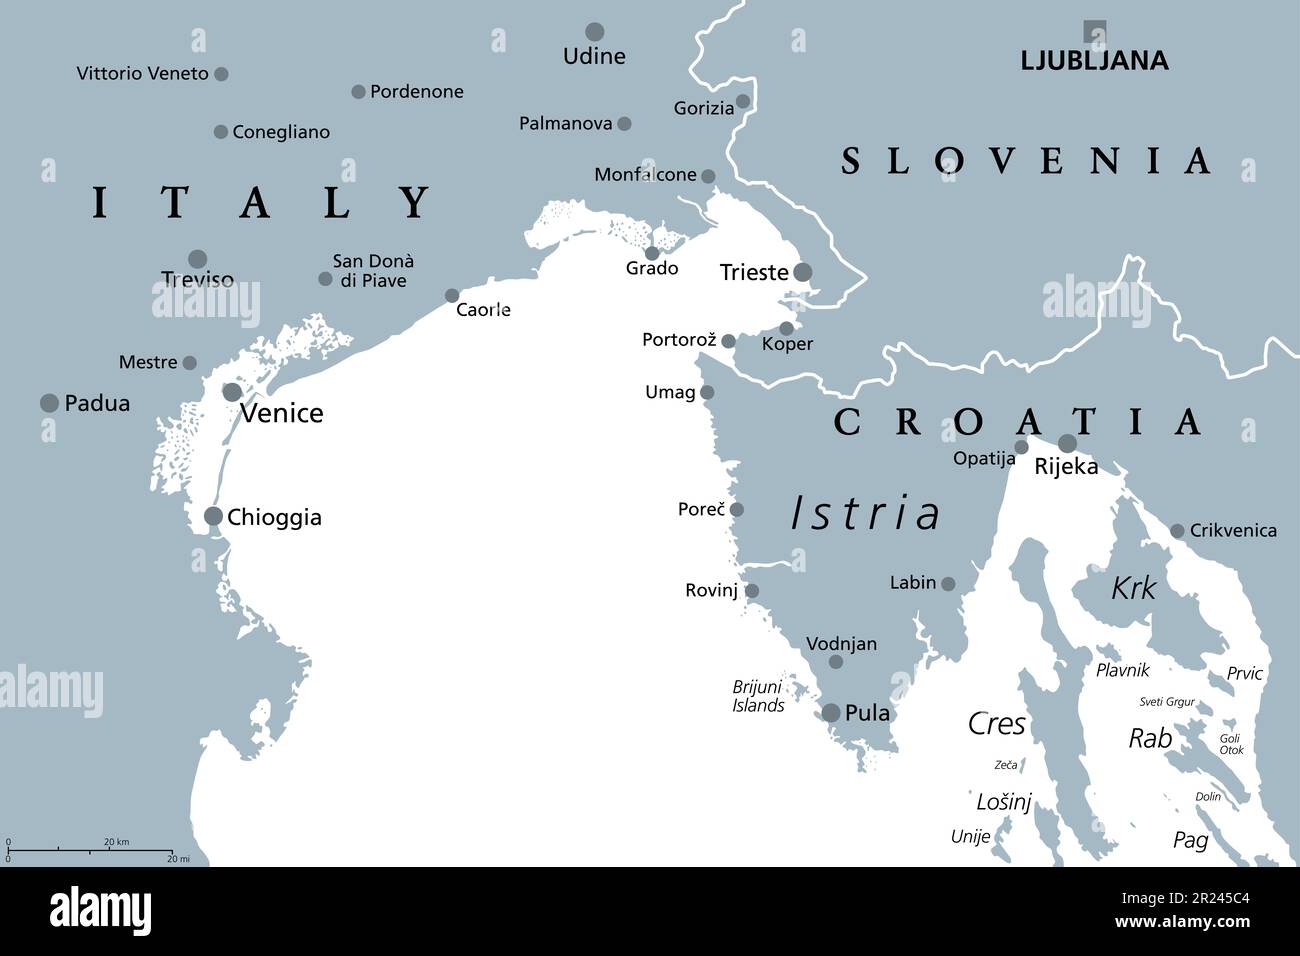 Golfo di Venezia, mappa politica grigia. Baia d'acqua nel Mare Adriatico settentrionale limitata dalla laguna veneta in Italia e dalla penisola istriana in Croazia. Foto Stock